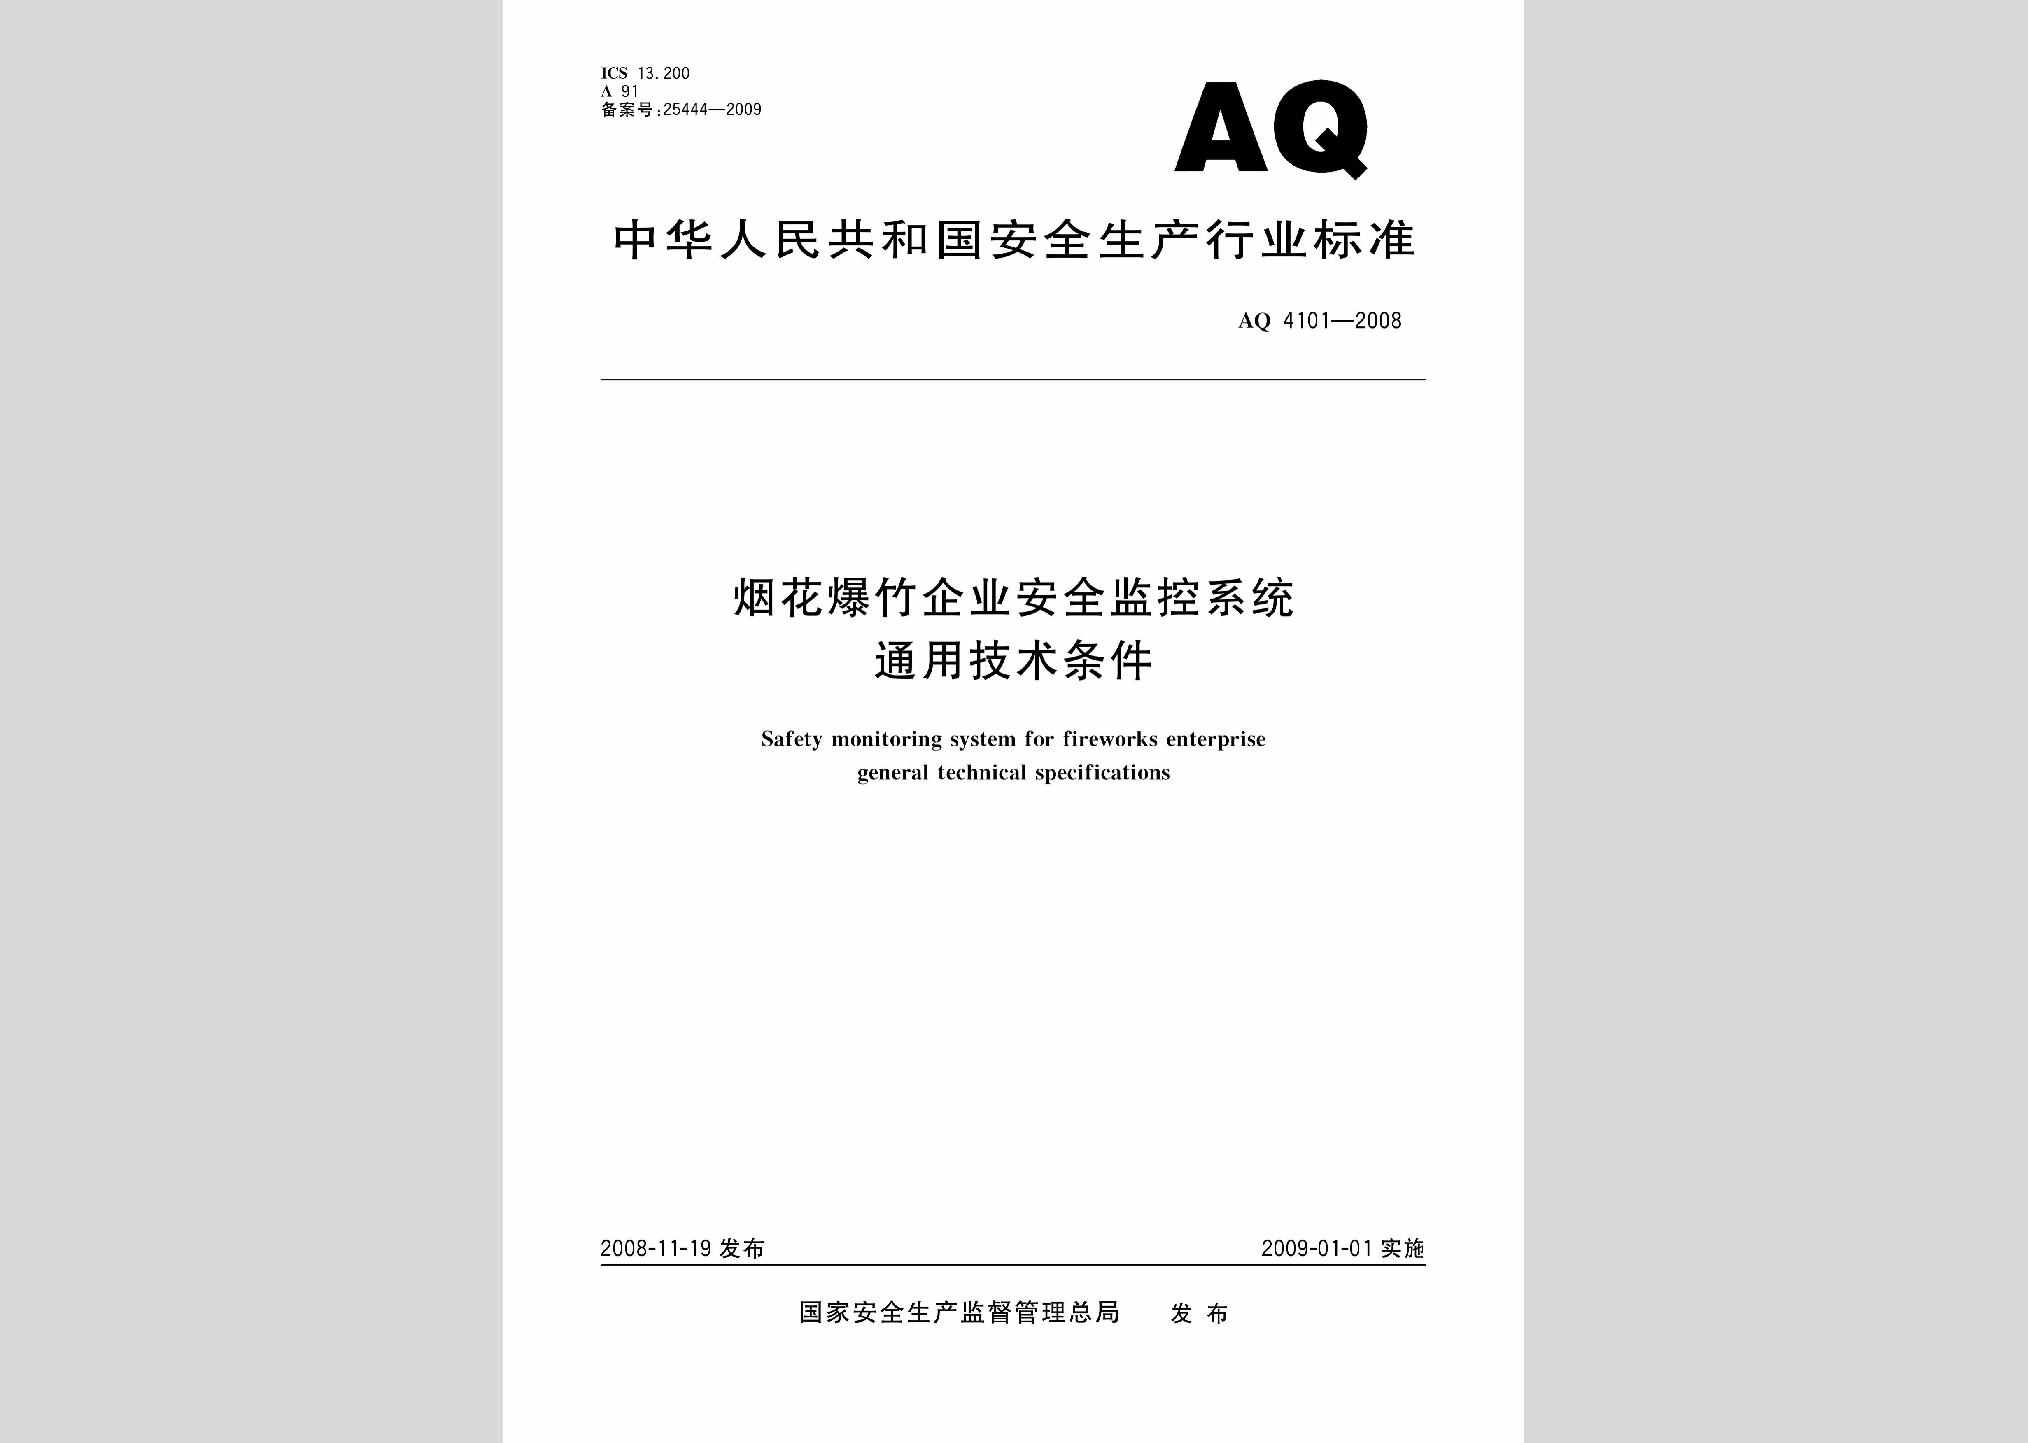 AQ4101-2008：烟花爆竹企业安全监控系统通用技术条件